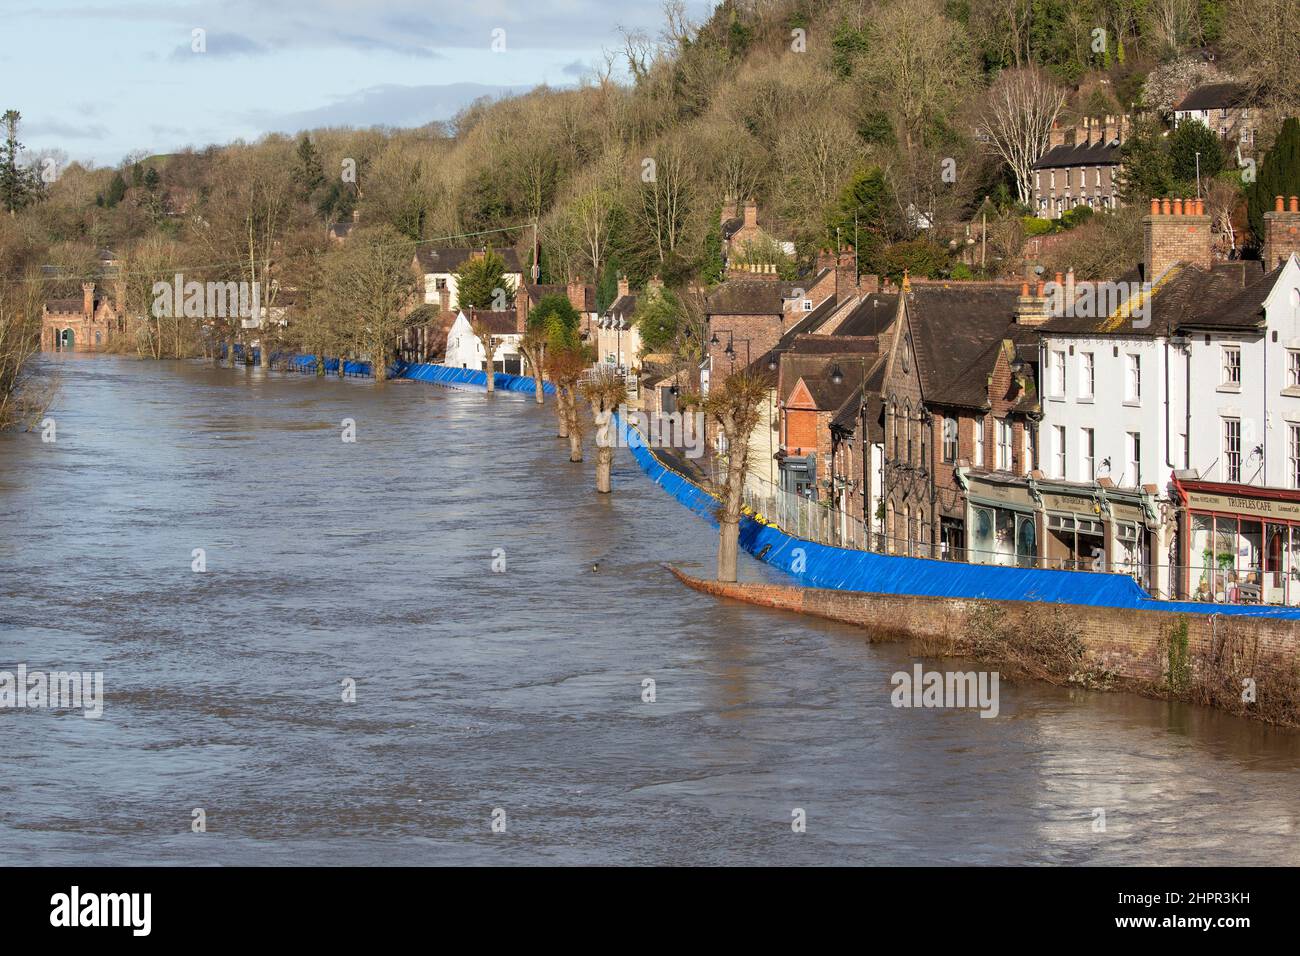 Shropshire, Inglaterra. 23/02/2022, Las barreras de inundación en la ciudad de Ironbridge en Shropshire, continúan frenando los niveles crecientes del río Severn, que ha estado en alza después de una semana de tormentas. Todos los residentes de Wharfage, el área detrás de las barreras, han sido evacuados, ya que el riesgo de que el río quebrara las barreras permanece. Foto de stock